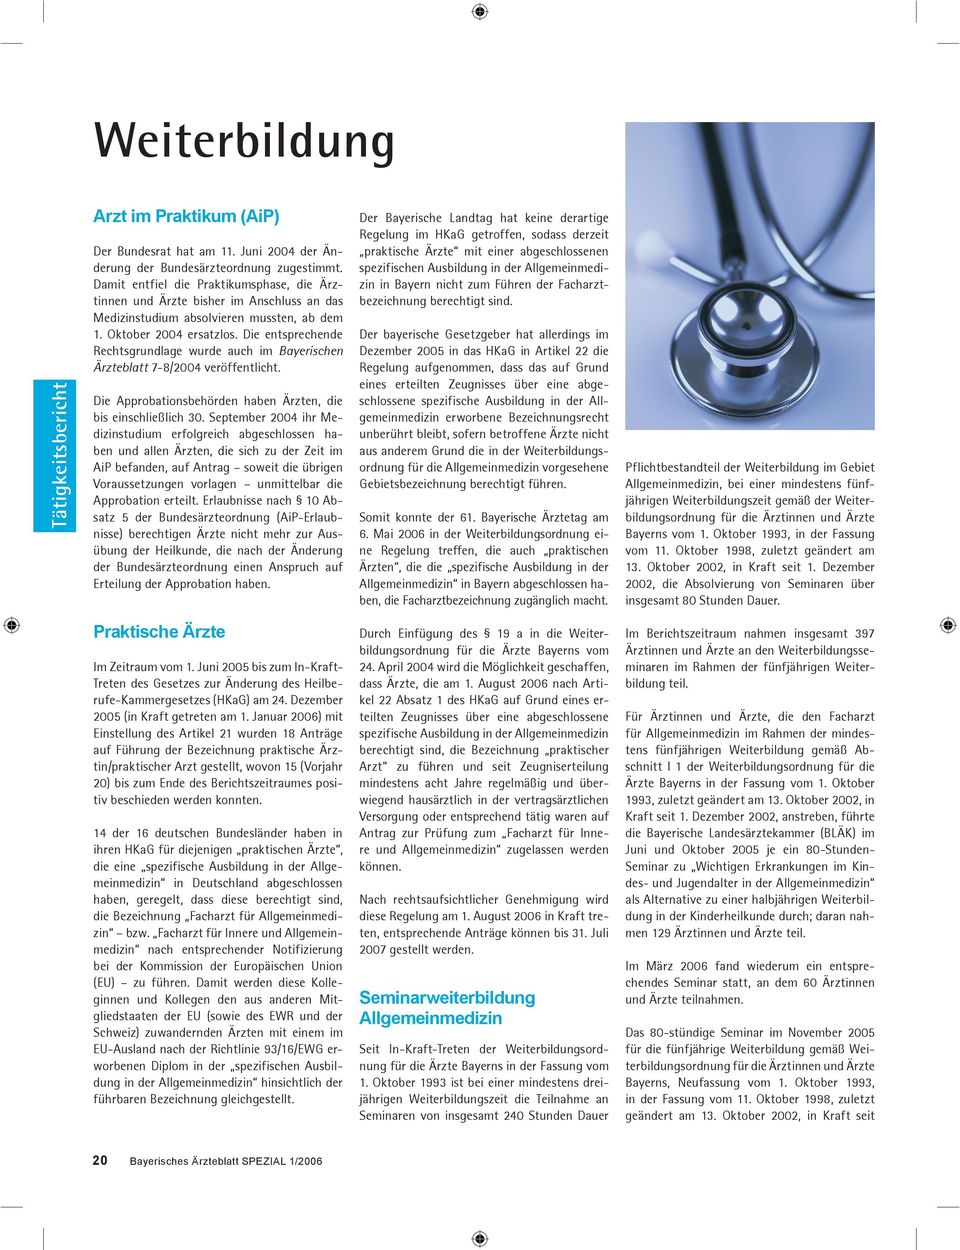 Die entsprechende Rechtsgrundlage wurde auch im Bayerischen Ärzteblatt 7-8/2004 veröffentlicht. Die Approbationsbehörden haben Ärzten, die bis einschließlich 30.